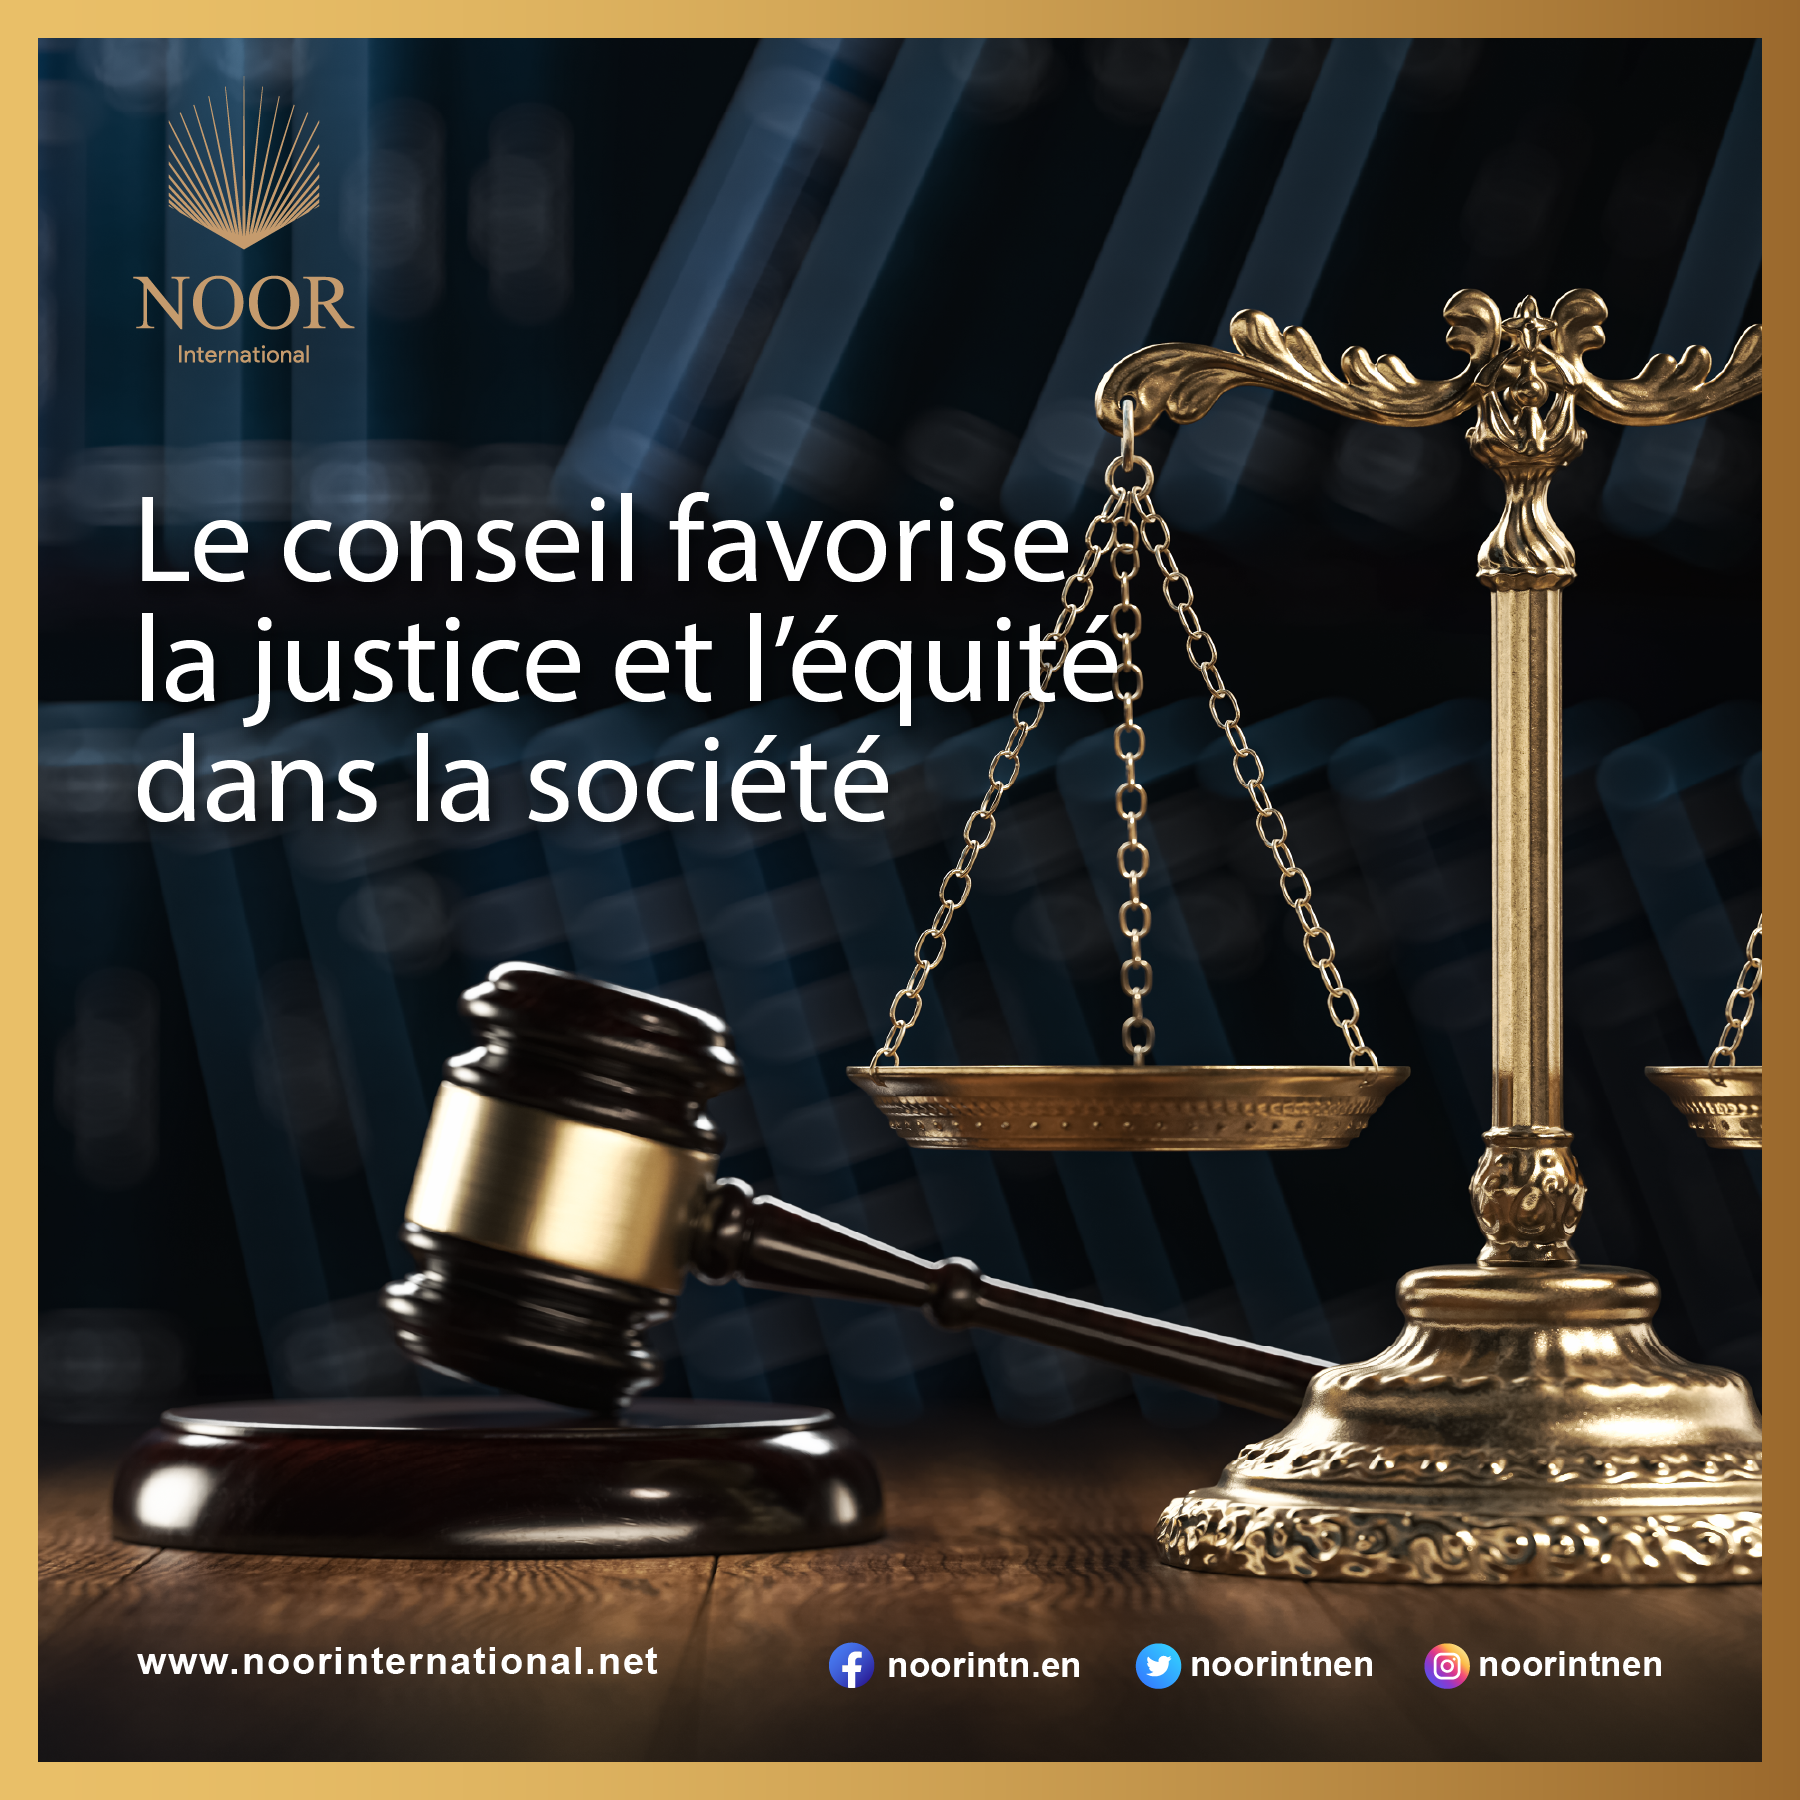 Le conseil favorise la justice et l’équité dans la société